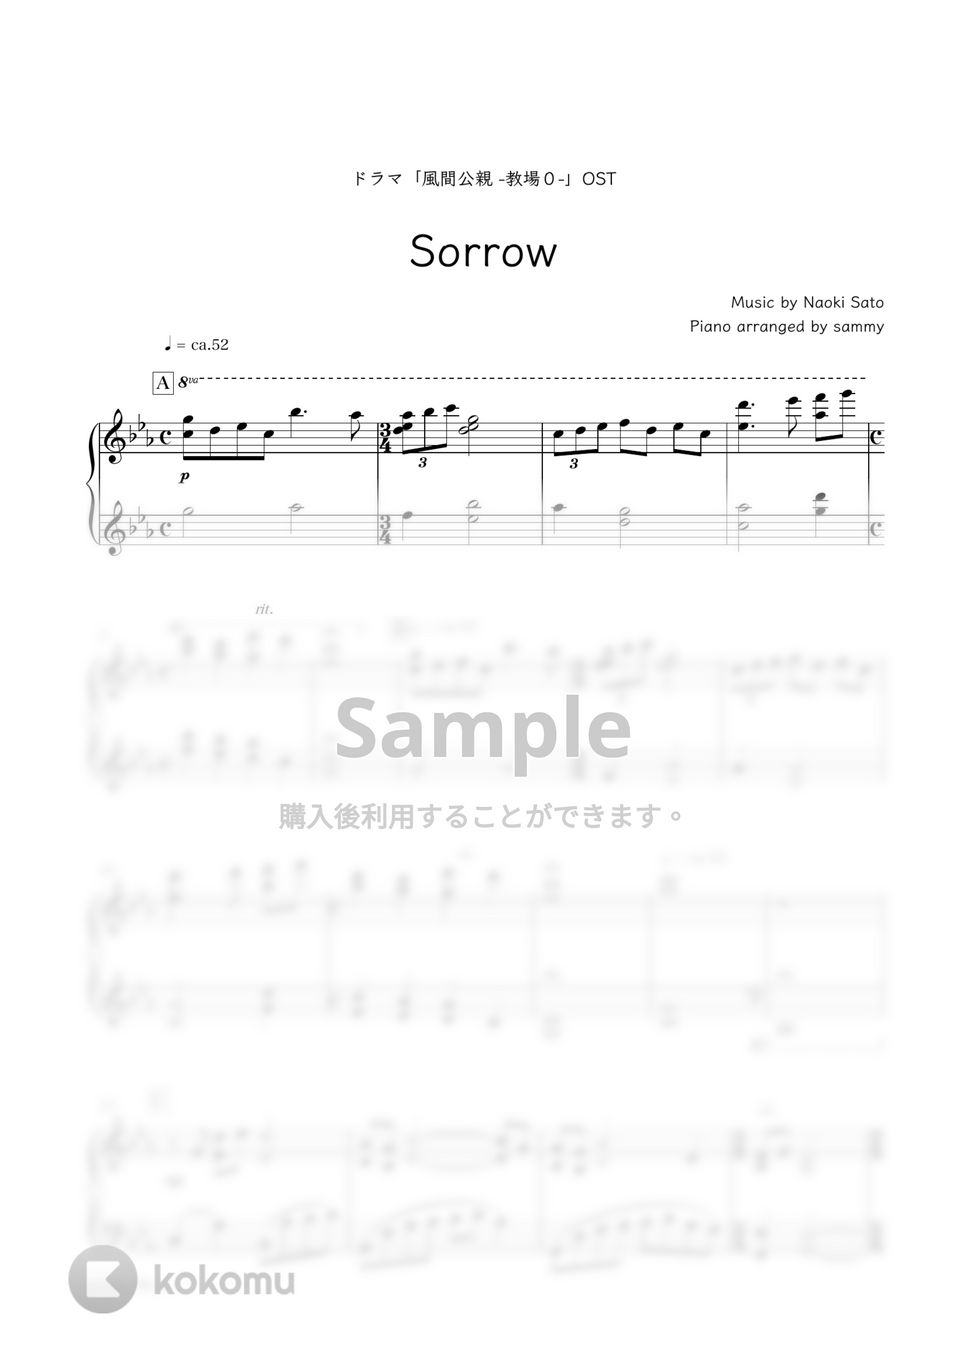 ドラマ『風間公親 ─教場0─』OST - Sorrow by sammy